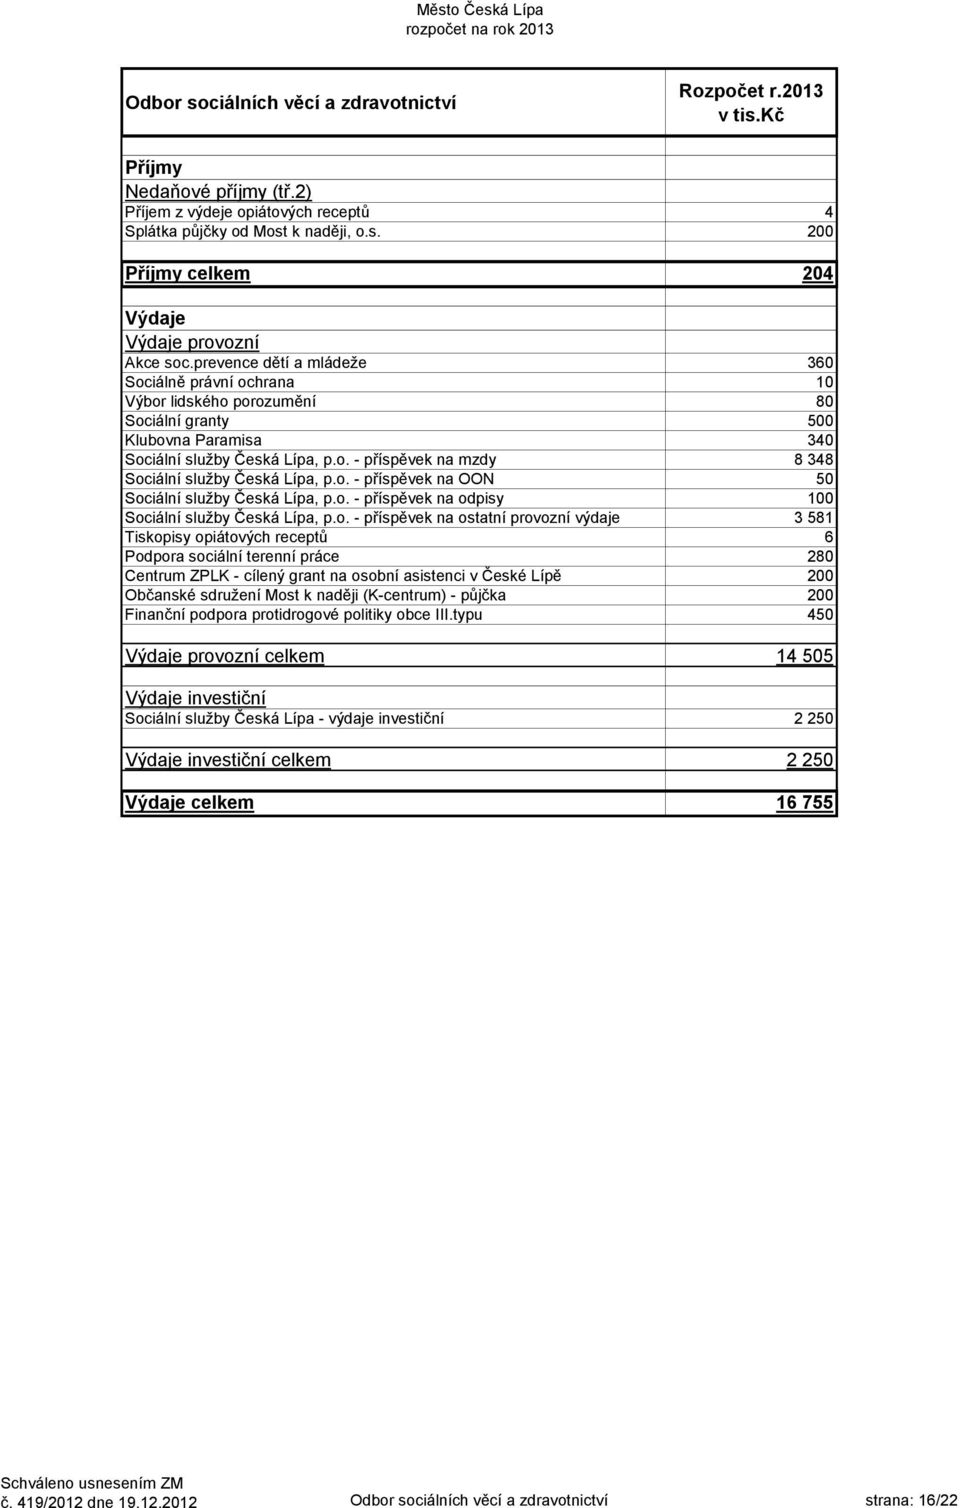 o. - příspěvek na OON 50 Sociální služby Česká Lípa, p.o. - příspěvek na odpisy 100 Sociální služby Česká Lípa, p.o. - příspěvek na ostatní provozní výdaje 3 581 Tiskopisy opiátových receptů 6